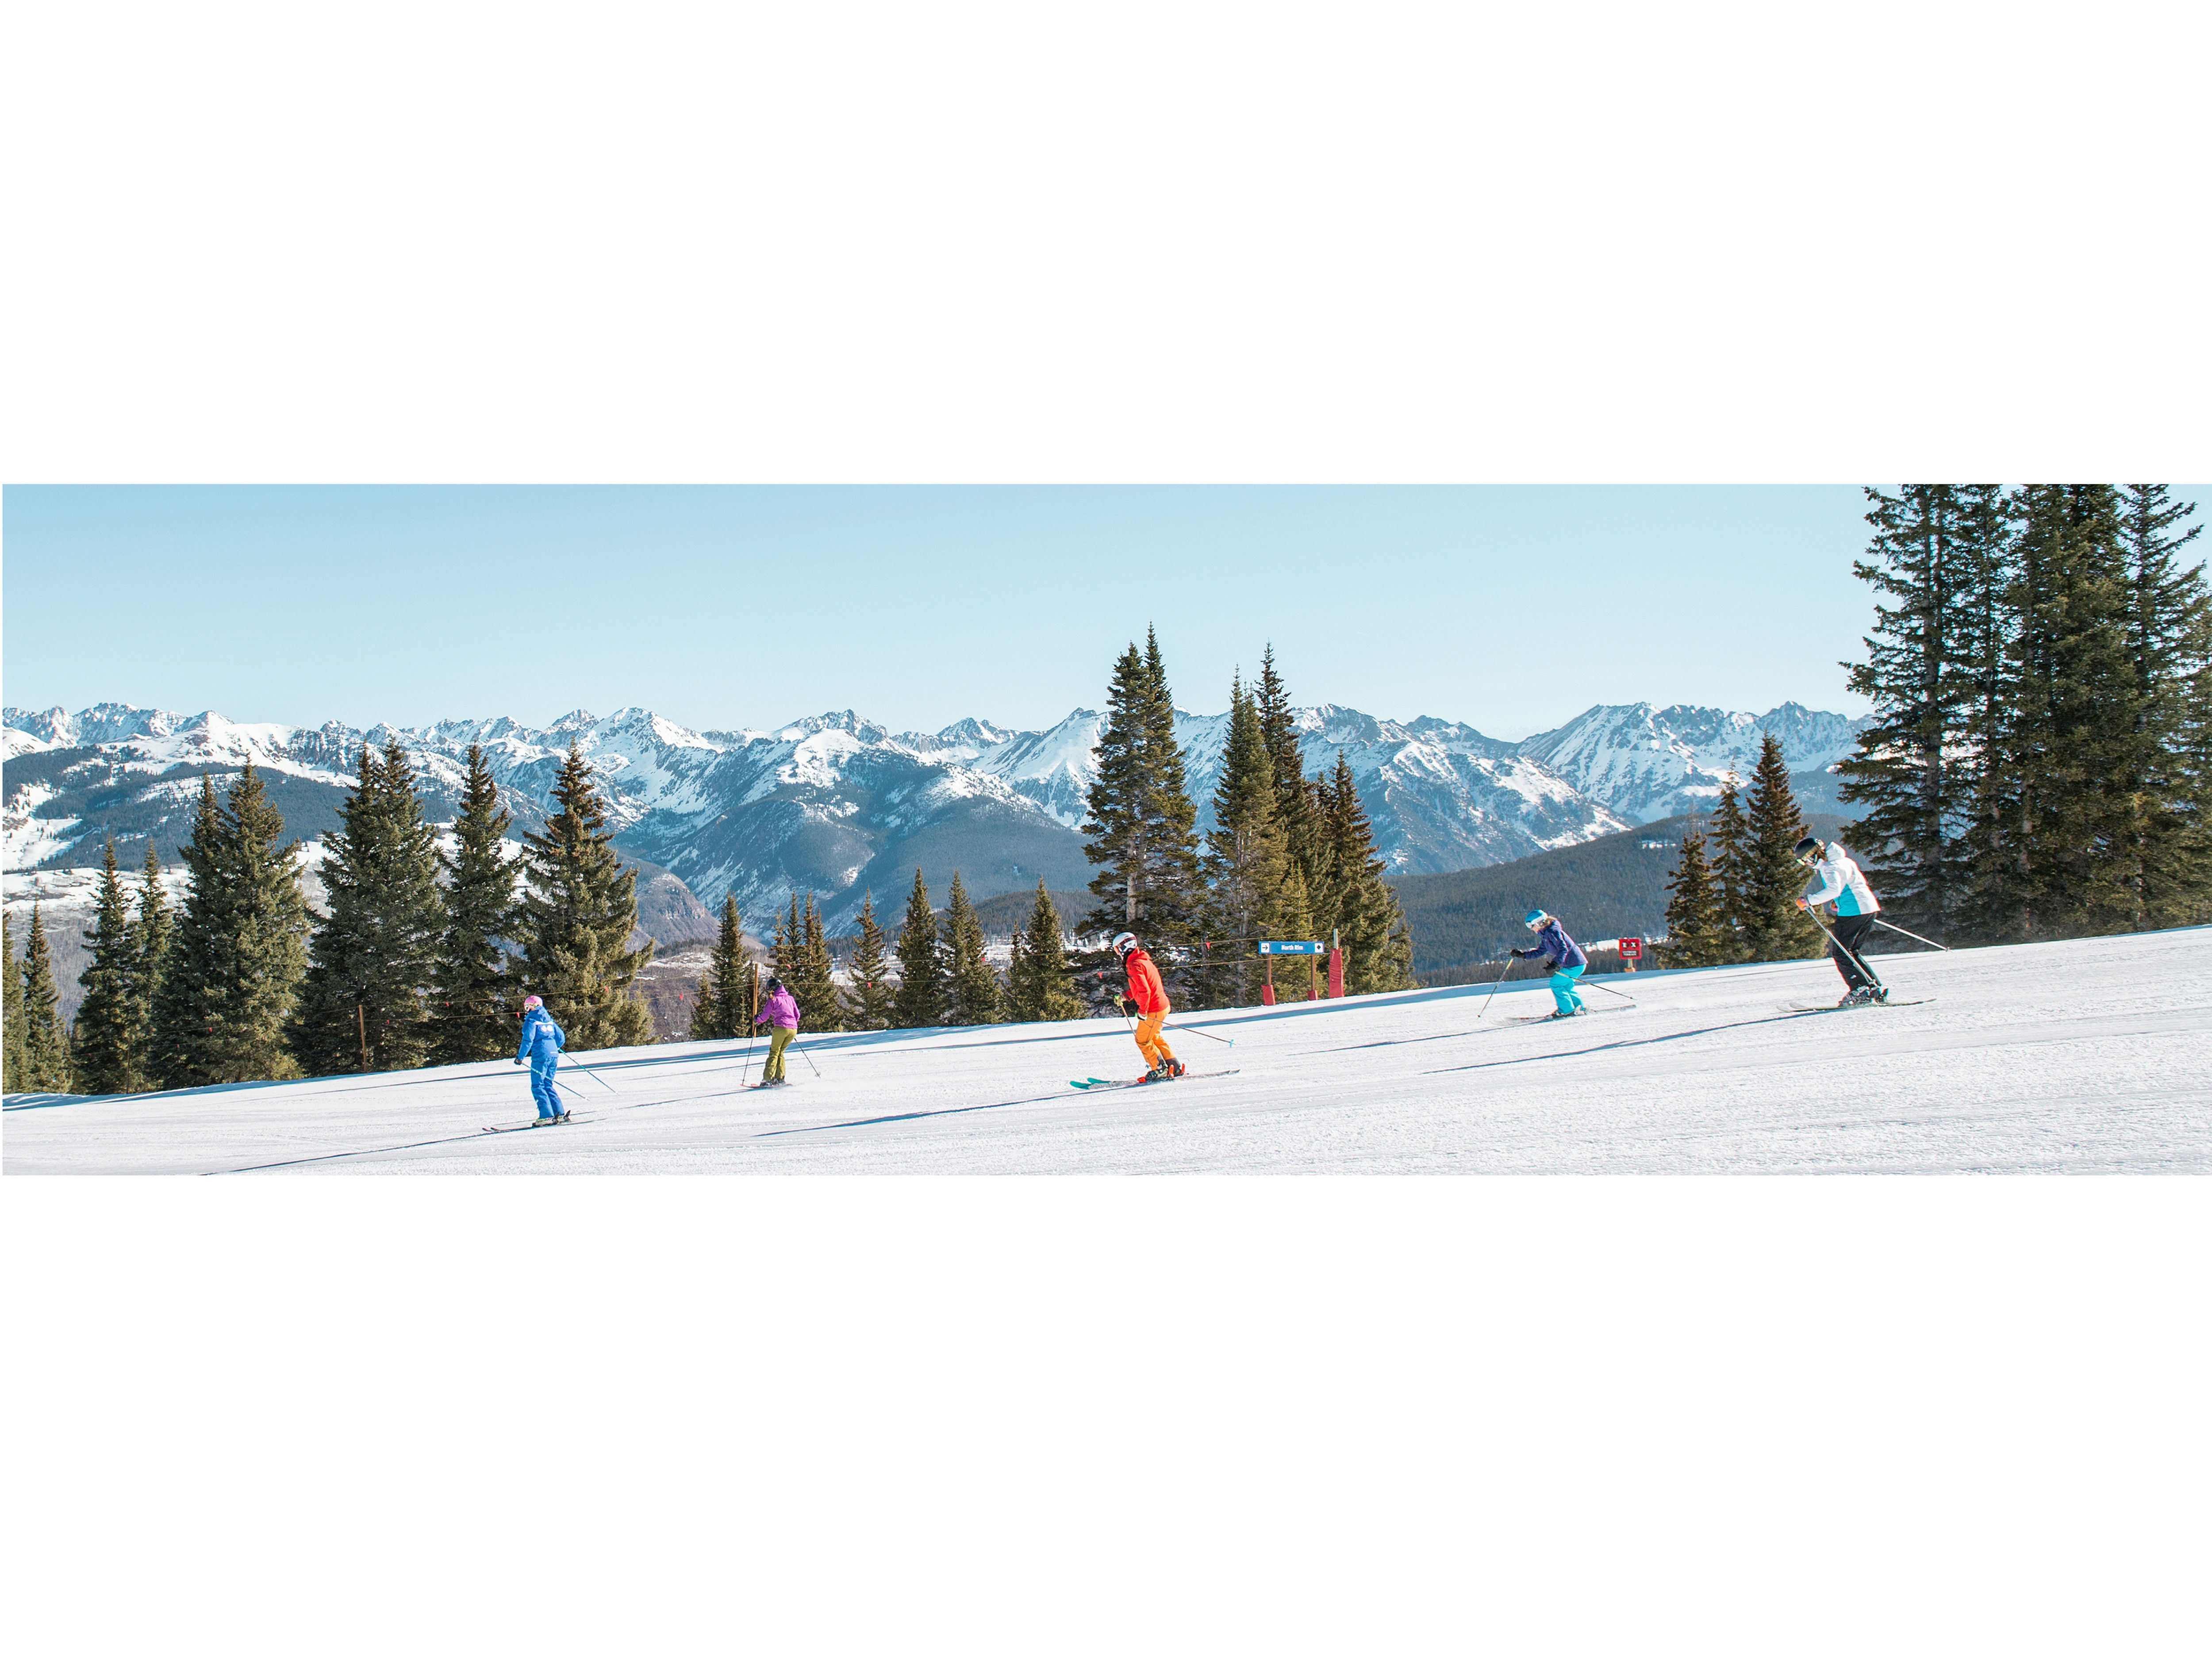 Colorado's Ski Season - When to Plan Your Ski Trip